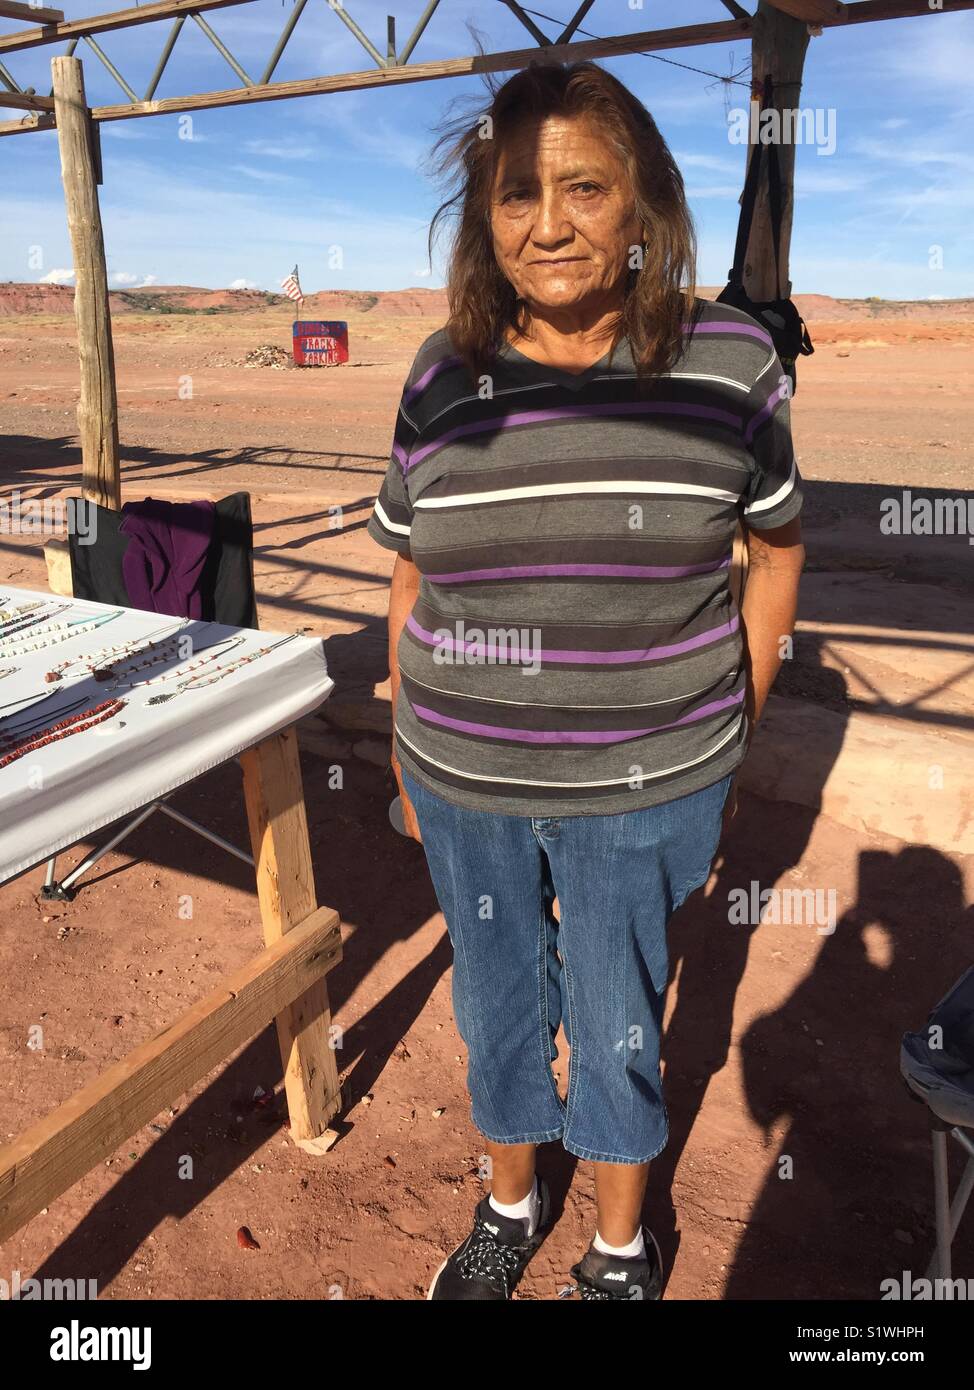 Juanita, Navajo femme amérindienne. Elle travaille comme guide touristique de traces de dinosaures fossilisés et vend ses bijoux faits à la main dans le nord de l'Arizona, aux États-Unis. Banque D'Images